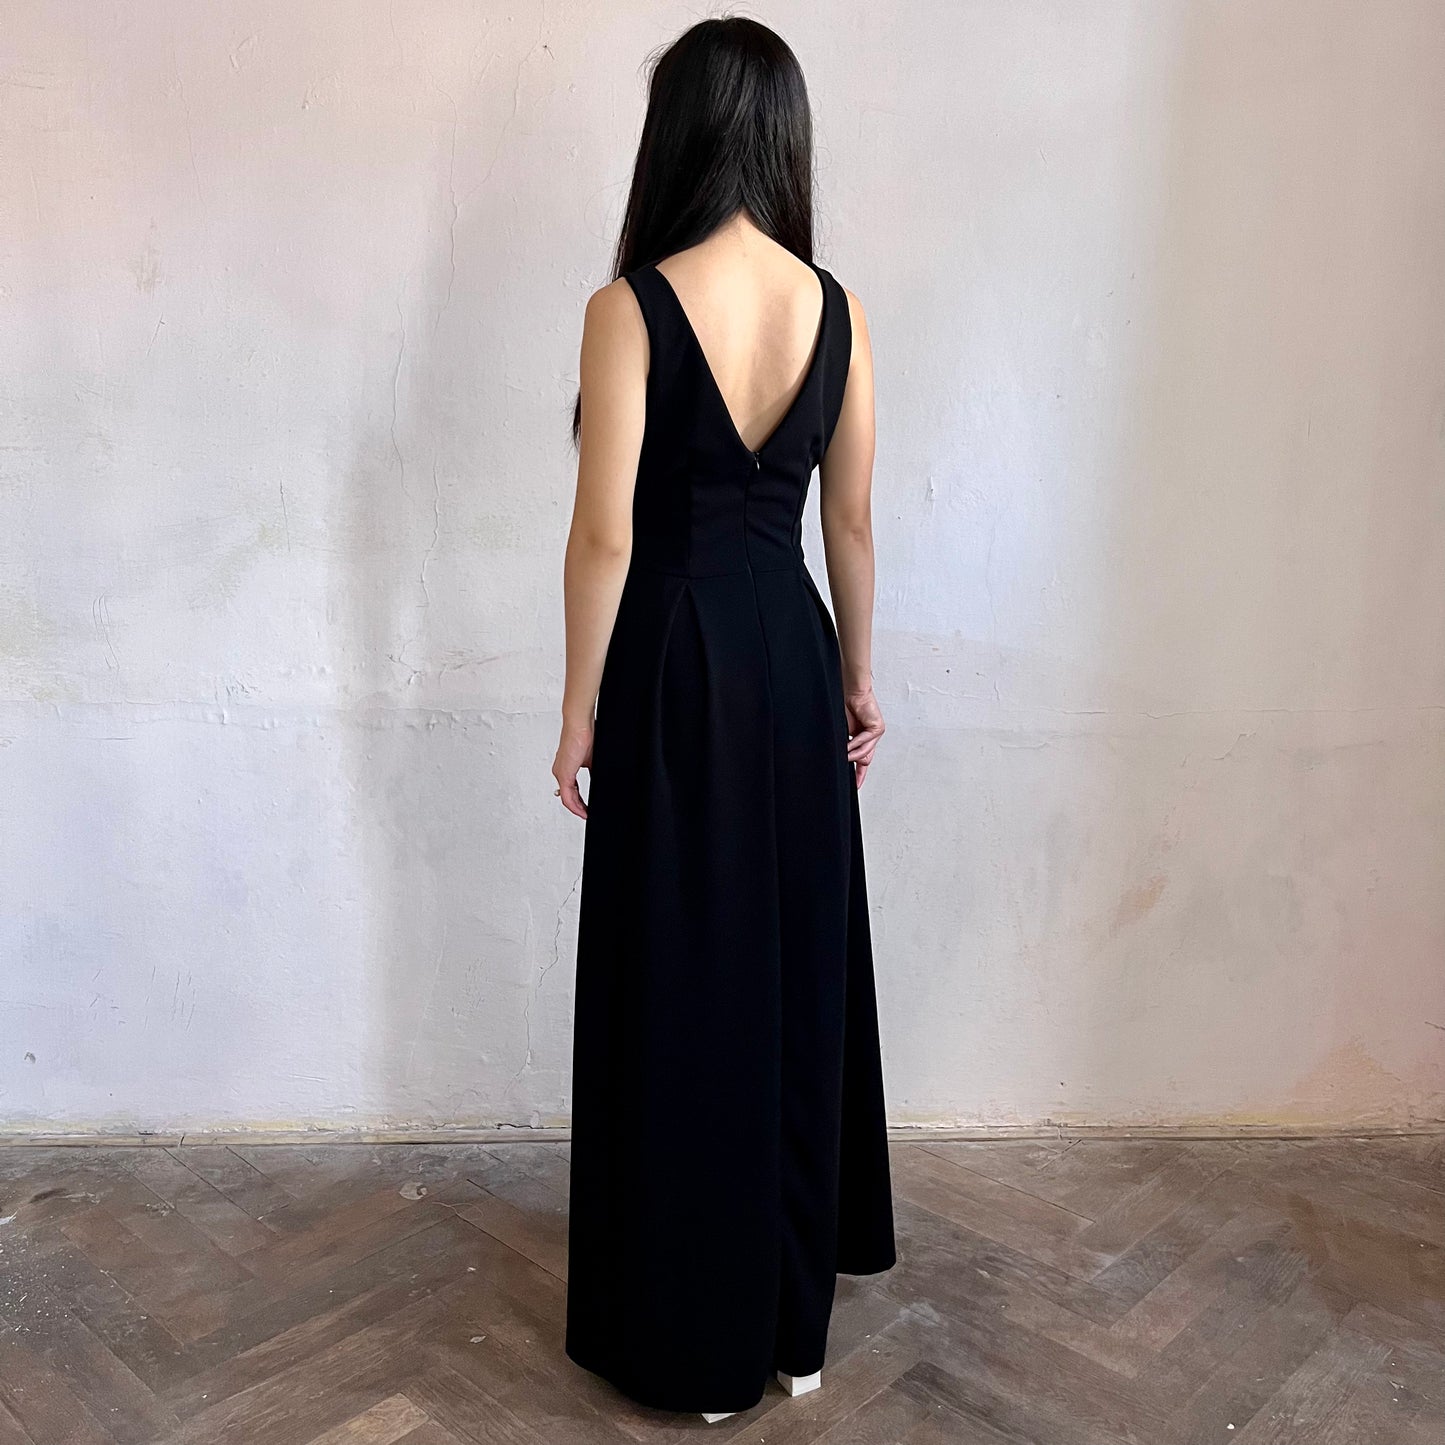 Modelka asijského původu pózující zezadu oblečená v černých společenských šatech